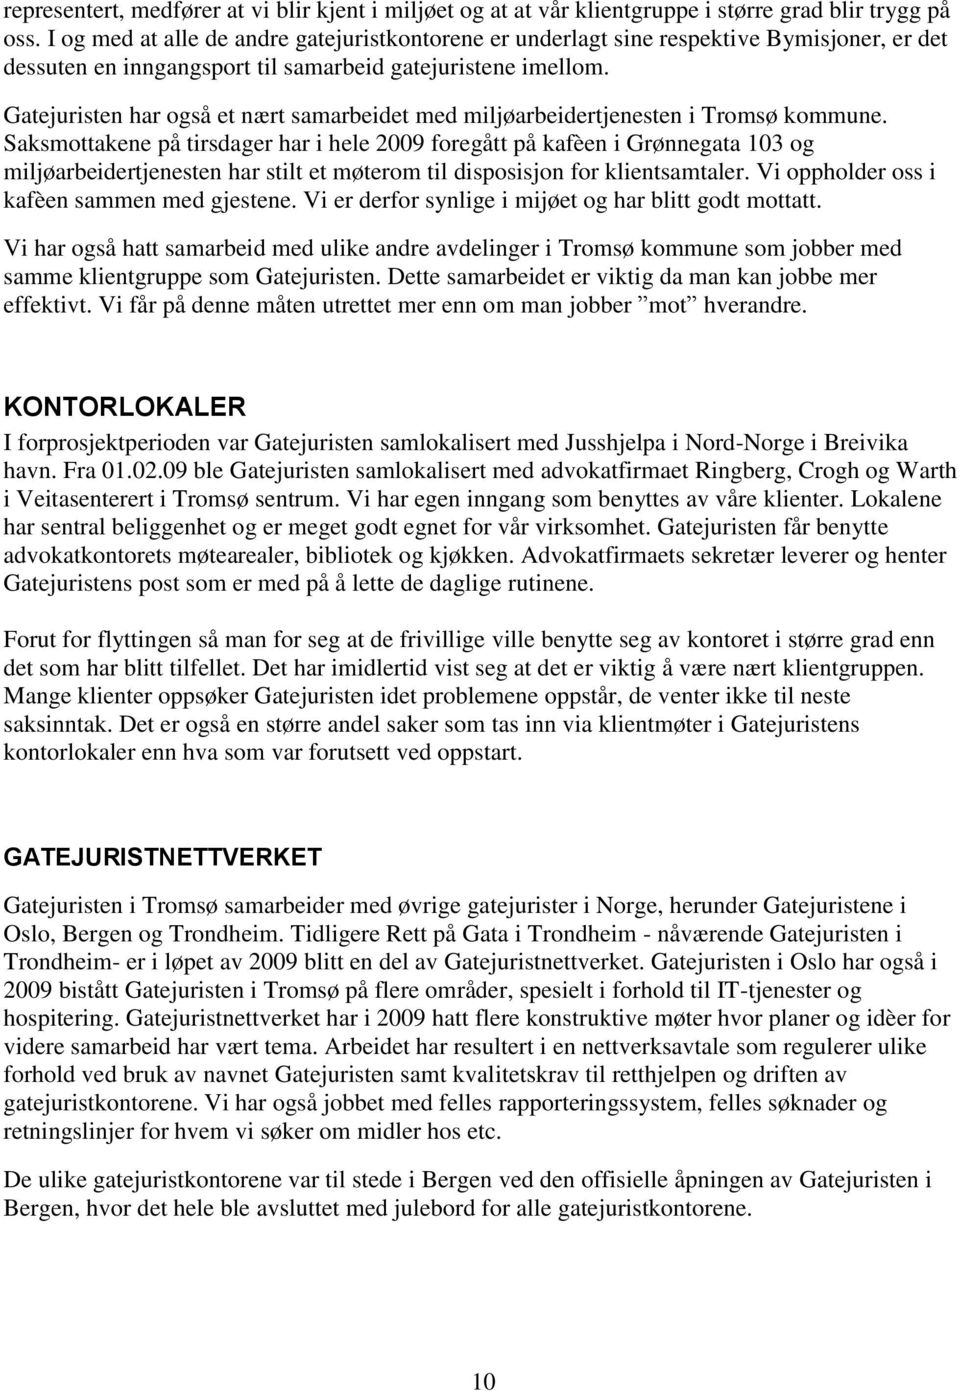 Gatejuristen har også et nært samarbeidet med miljøarbeidertjenesten i Tromsø kommune.